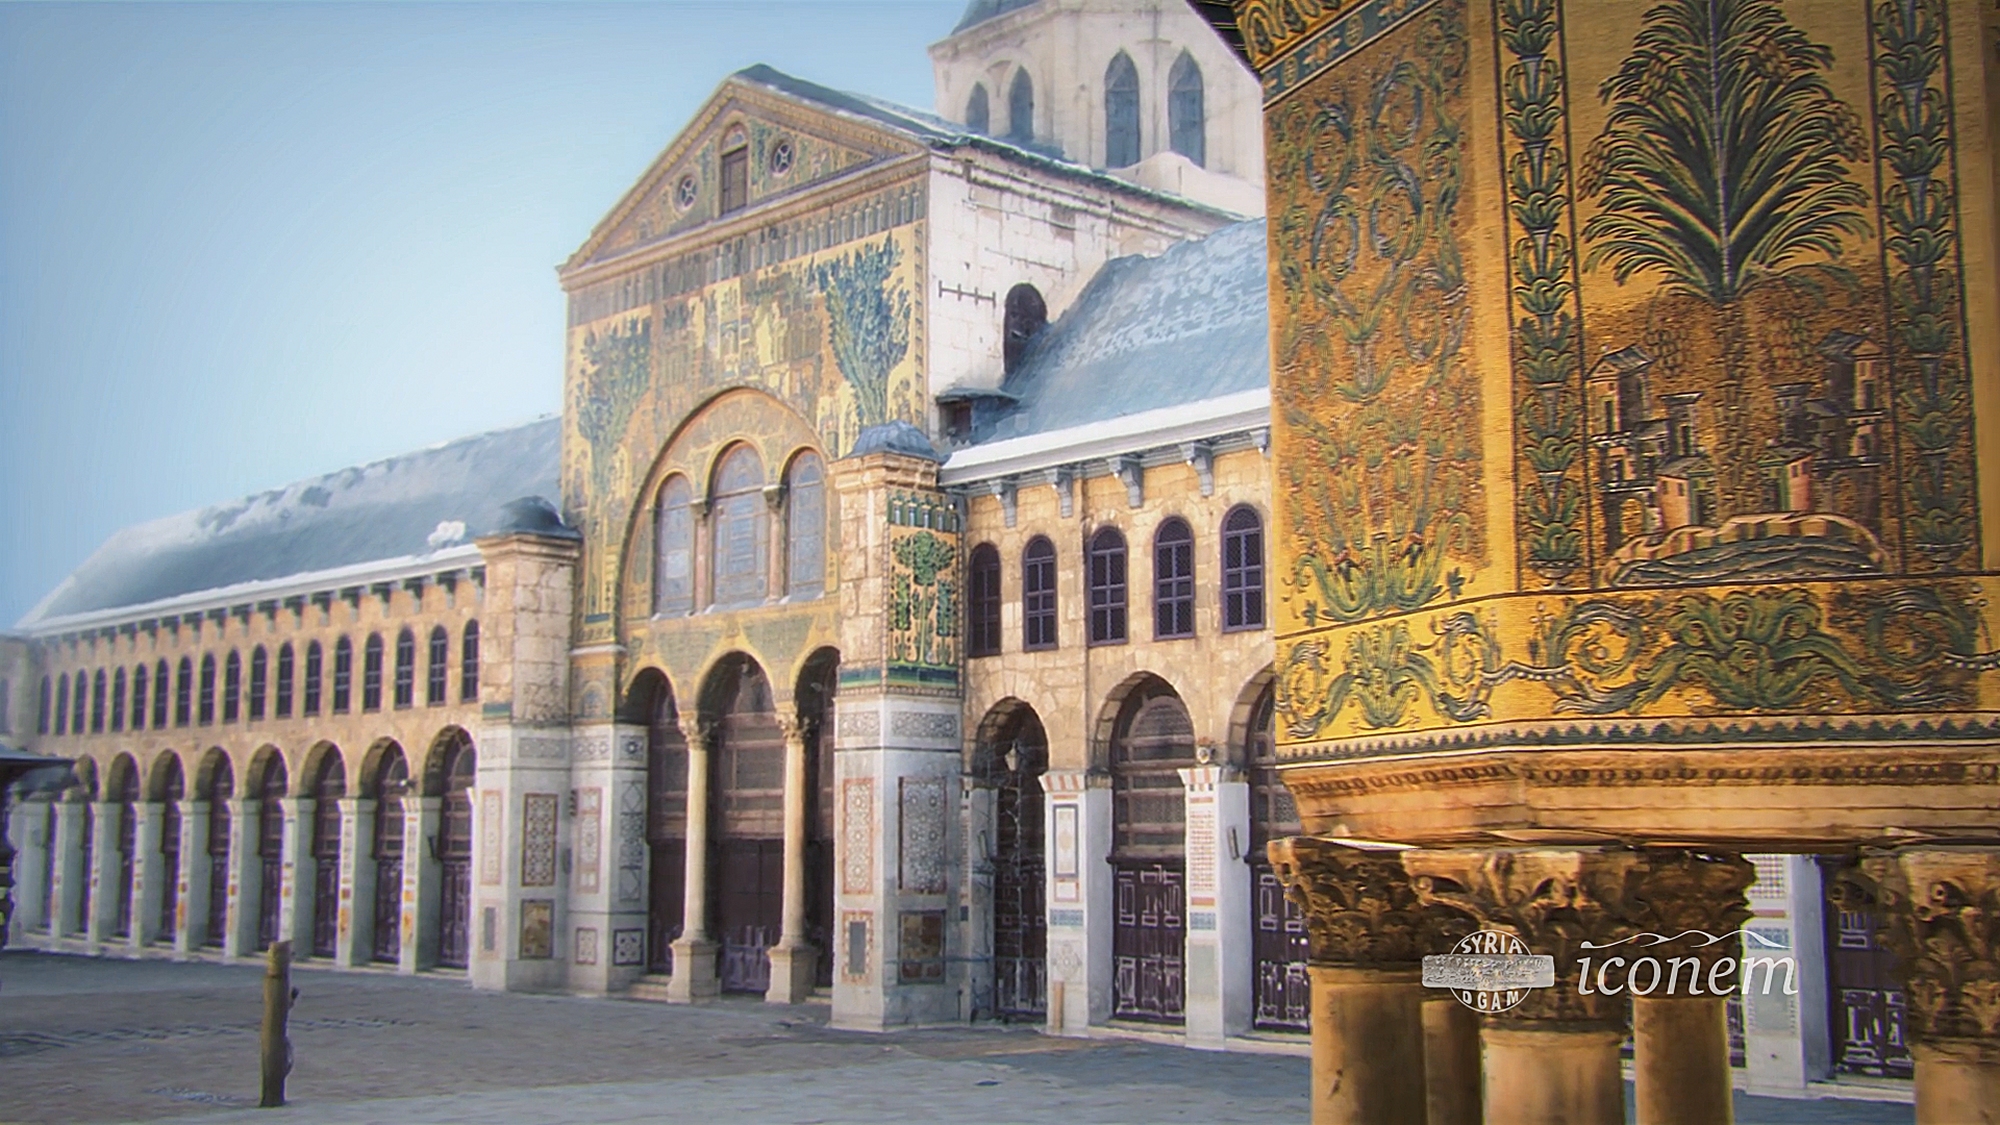 La mosquée des Omeyyades, à Damas, a été construite au VIIIe siècle. La numérisation permet la réalisation d'un modèle 3D utile aux historiens mais aussi aussi au public. © Iconem